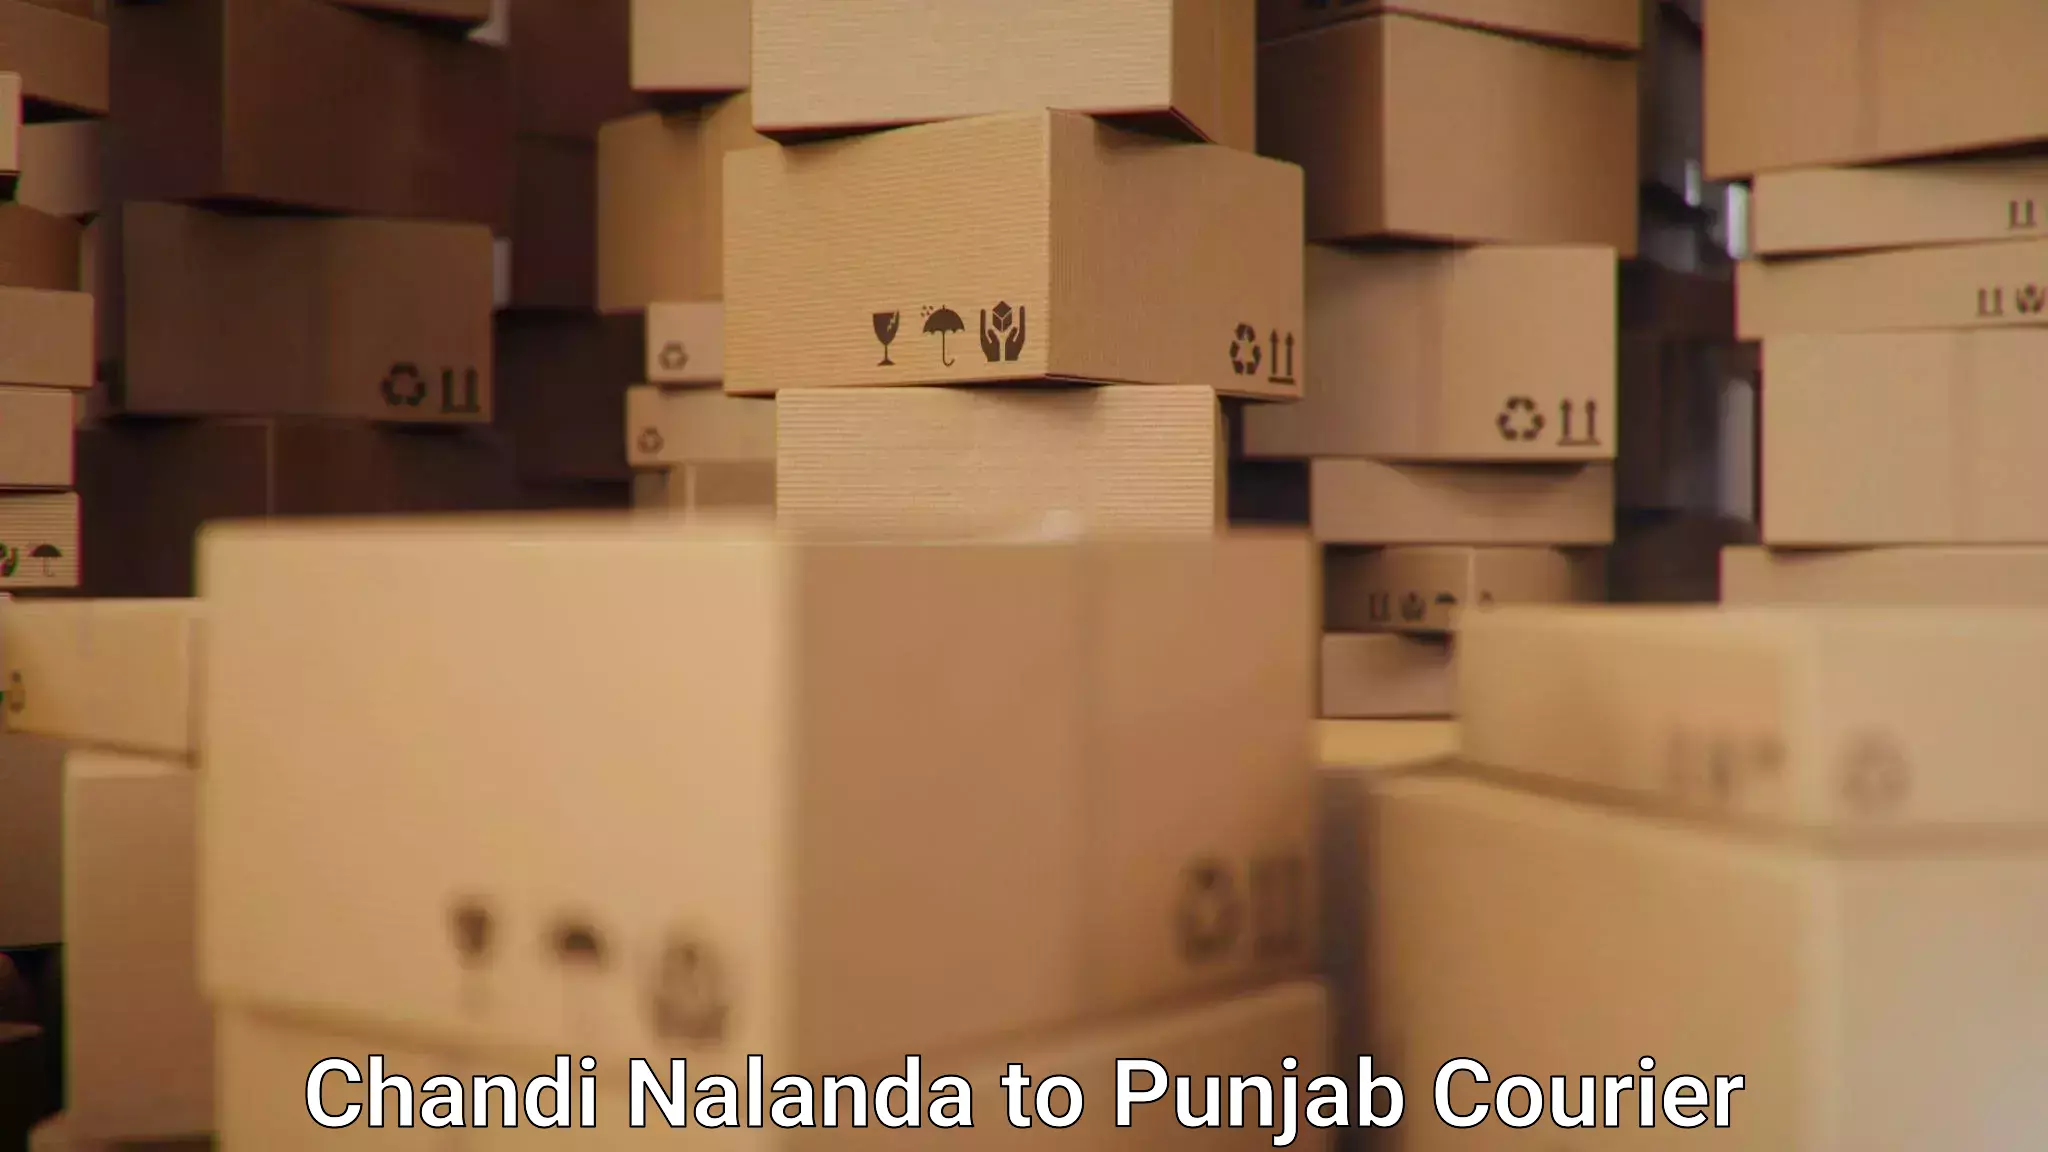 International courier networks Chandi Nalanda to Zirakpur